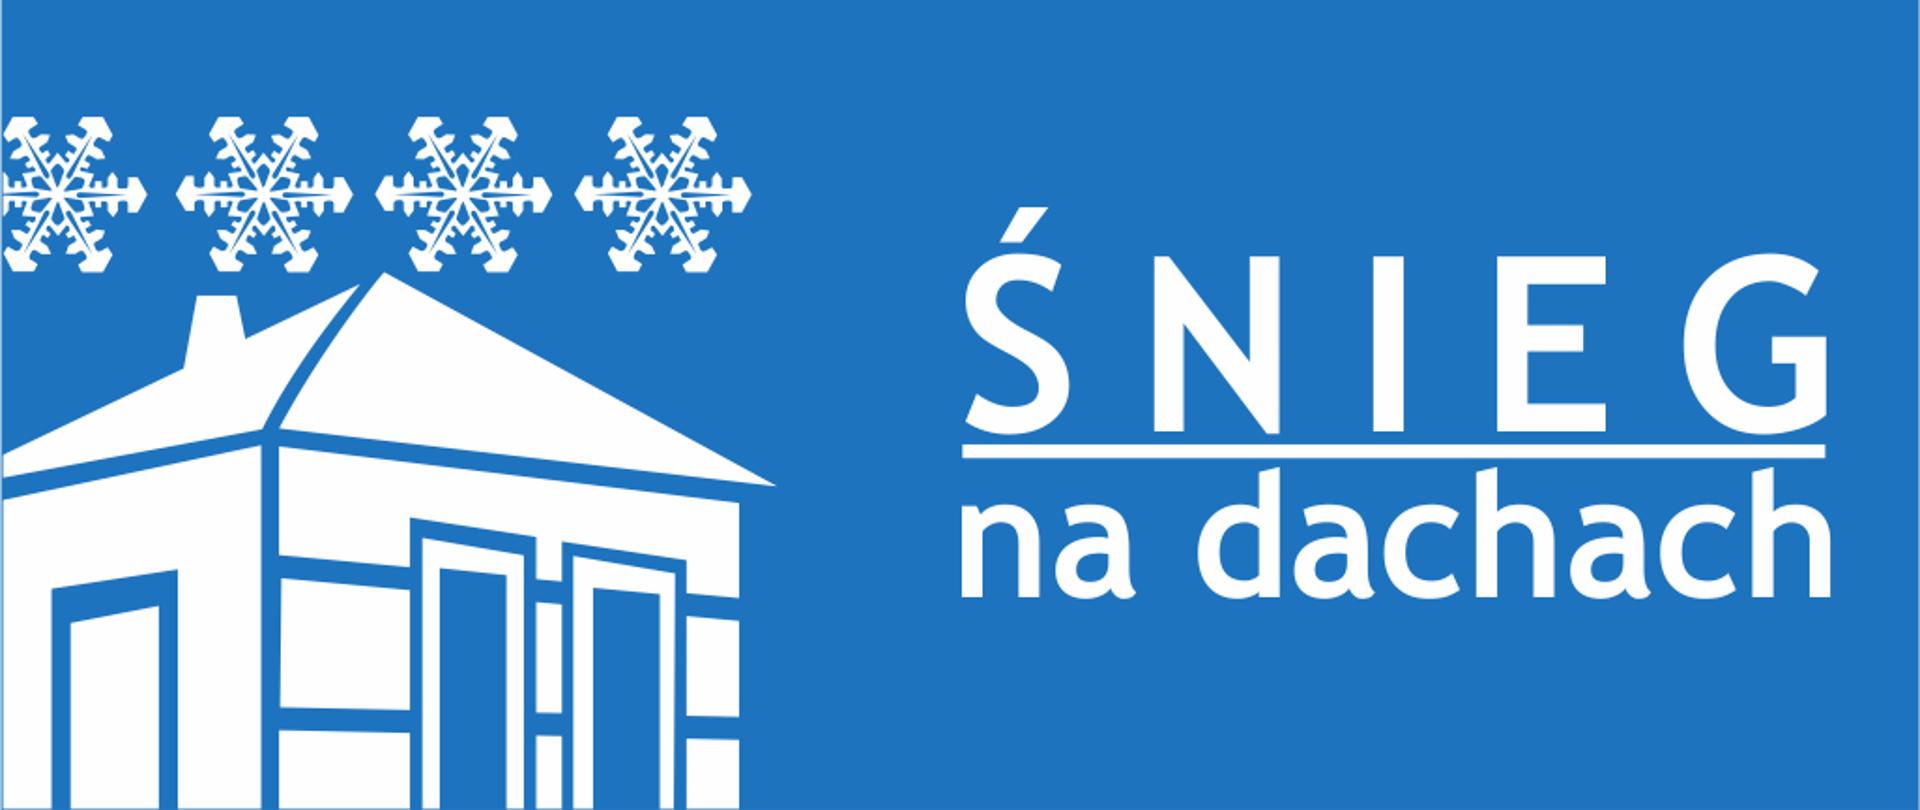 Rysunek na niebieskim tle. Po lewej stronie narysowany jest uproszczony dom, nad którym narysowane są cztery płatki śniegu. Po prawej stronie napis śnieg na dachach. Rysunki i napisy są białe